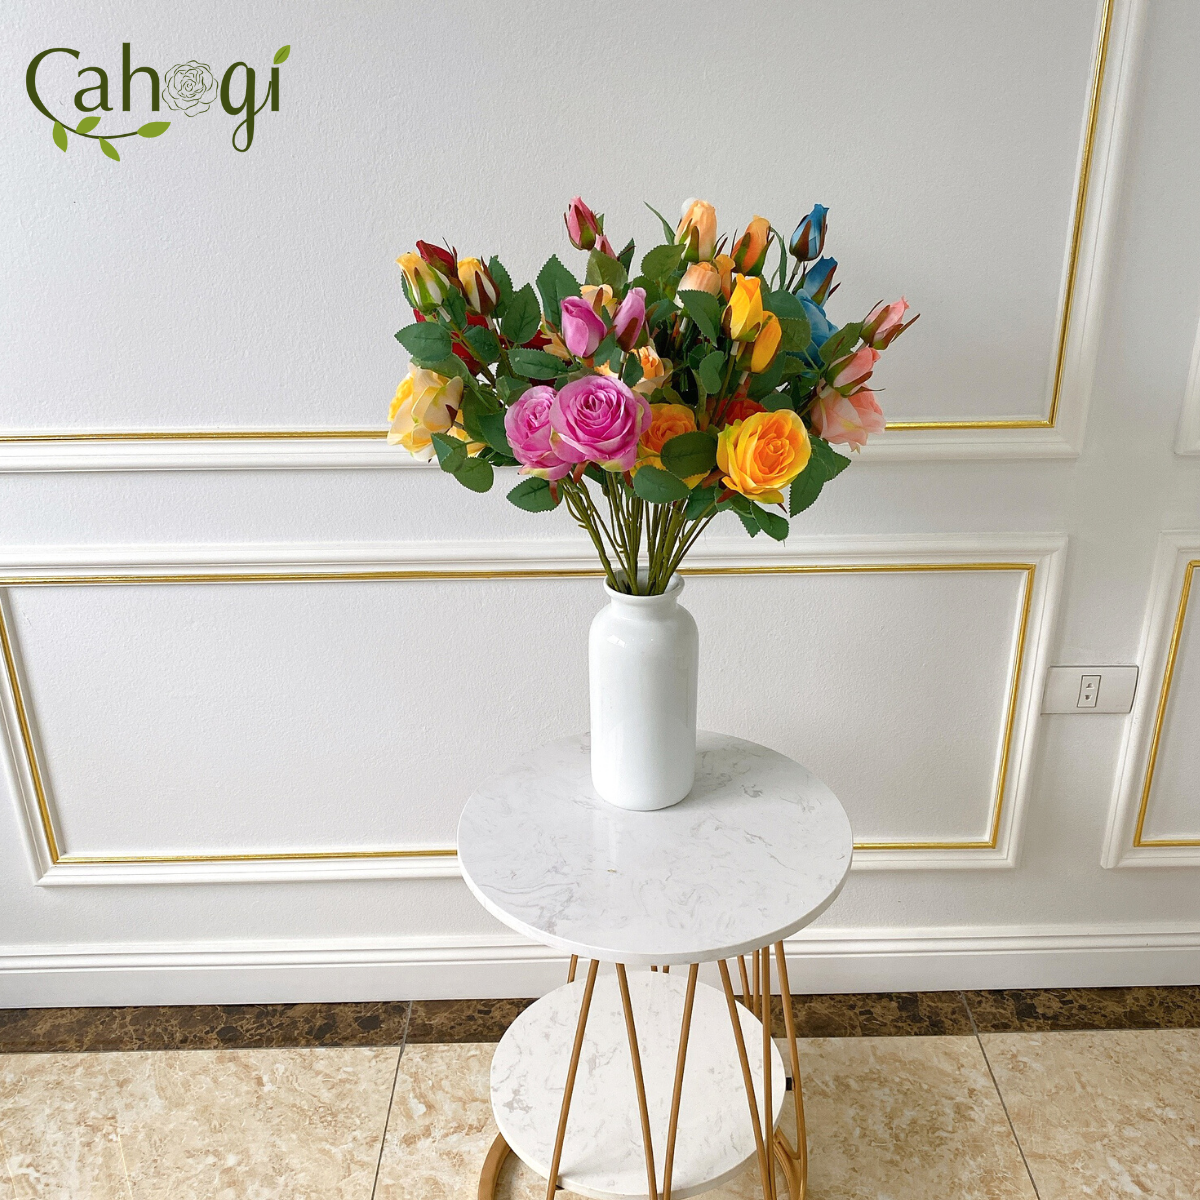 Hãy chiêm ngưỡng hoa giả đầy màu sắc và tinh tế này. Chúng toát lên vẻ đẹp tự nhiên và thích hợp để trang trí cho không gian nhà bạn.